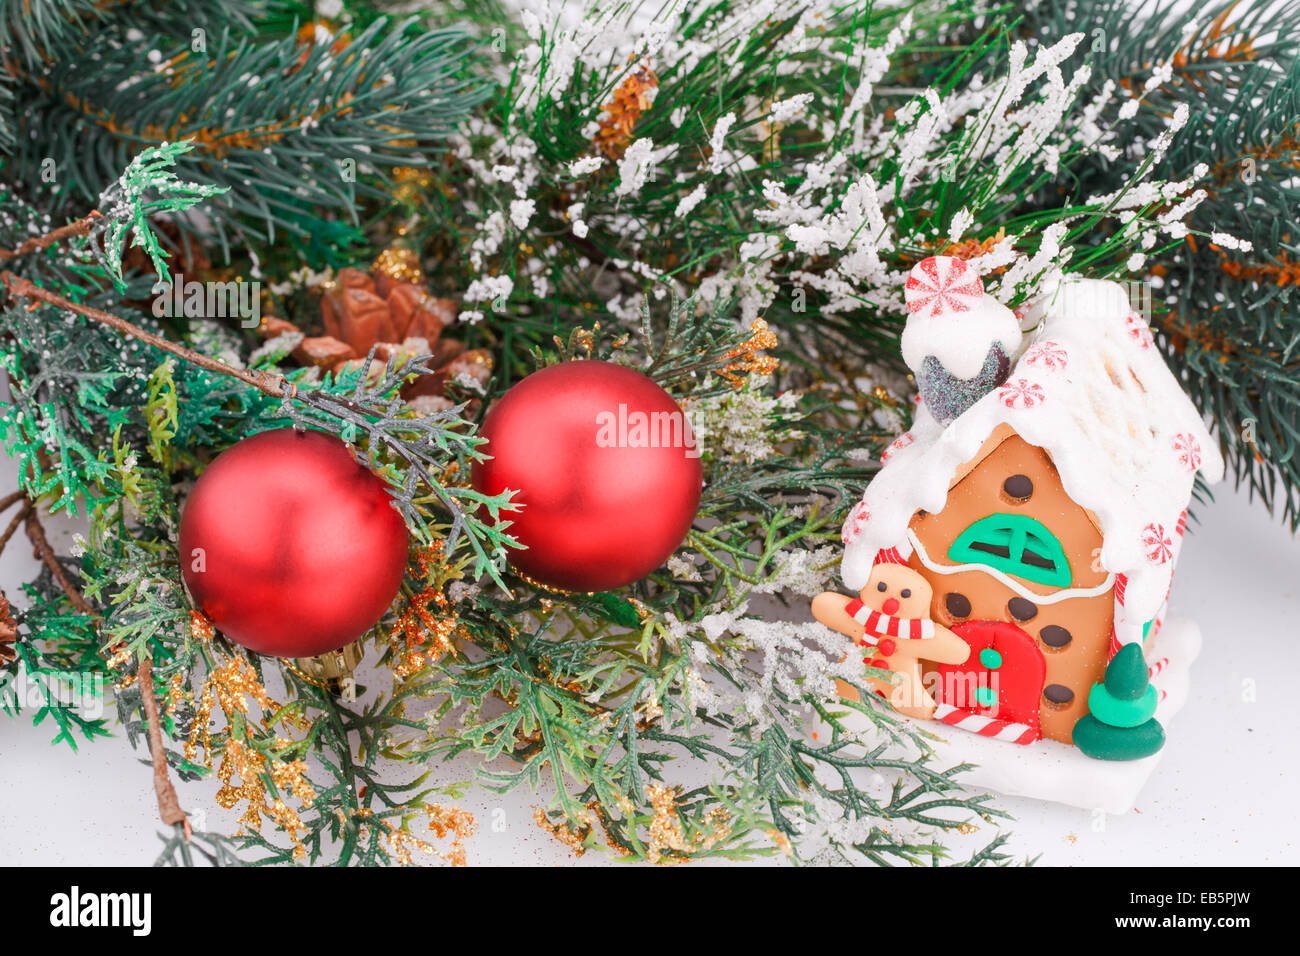 Decorazione di natale con palline rosse, fir-ramo di albero e casa del giocattolo. Foto Stock